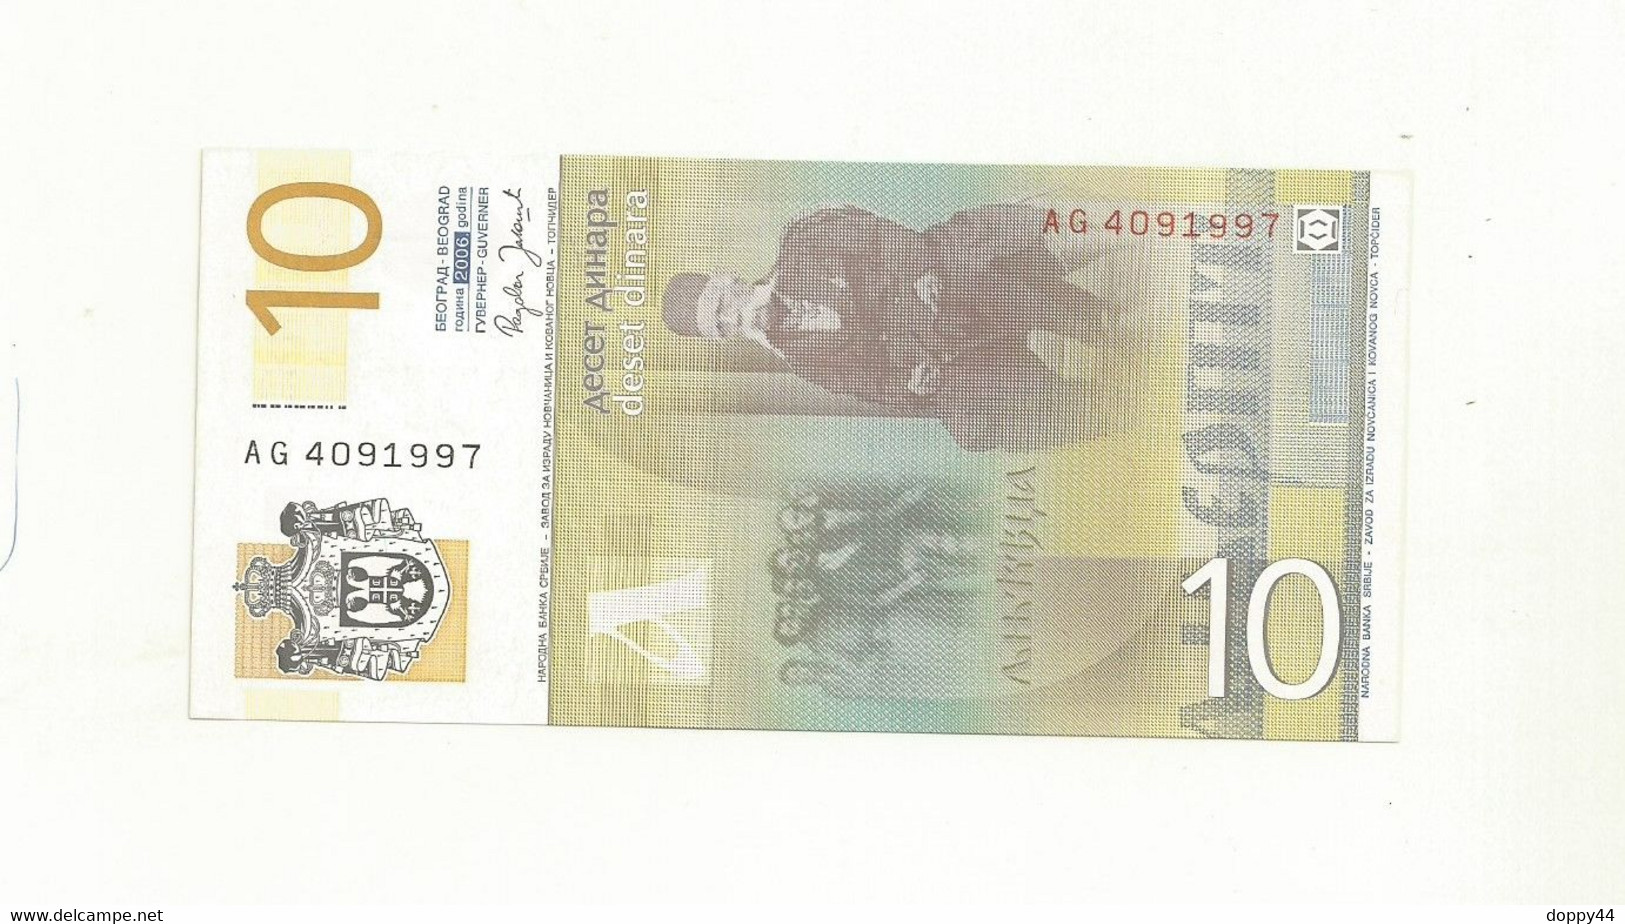 BILLET NEUF SERBIE 10 DINAR EMIS EN 2006. - Serbien